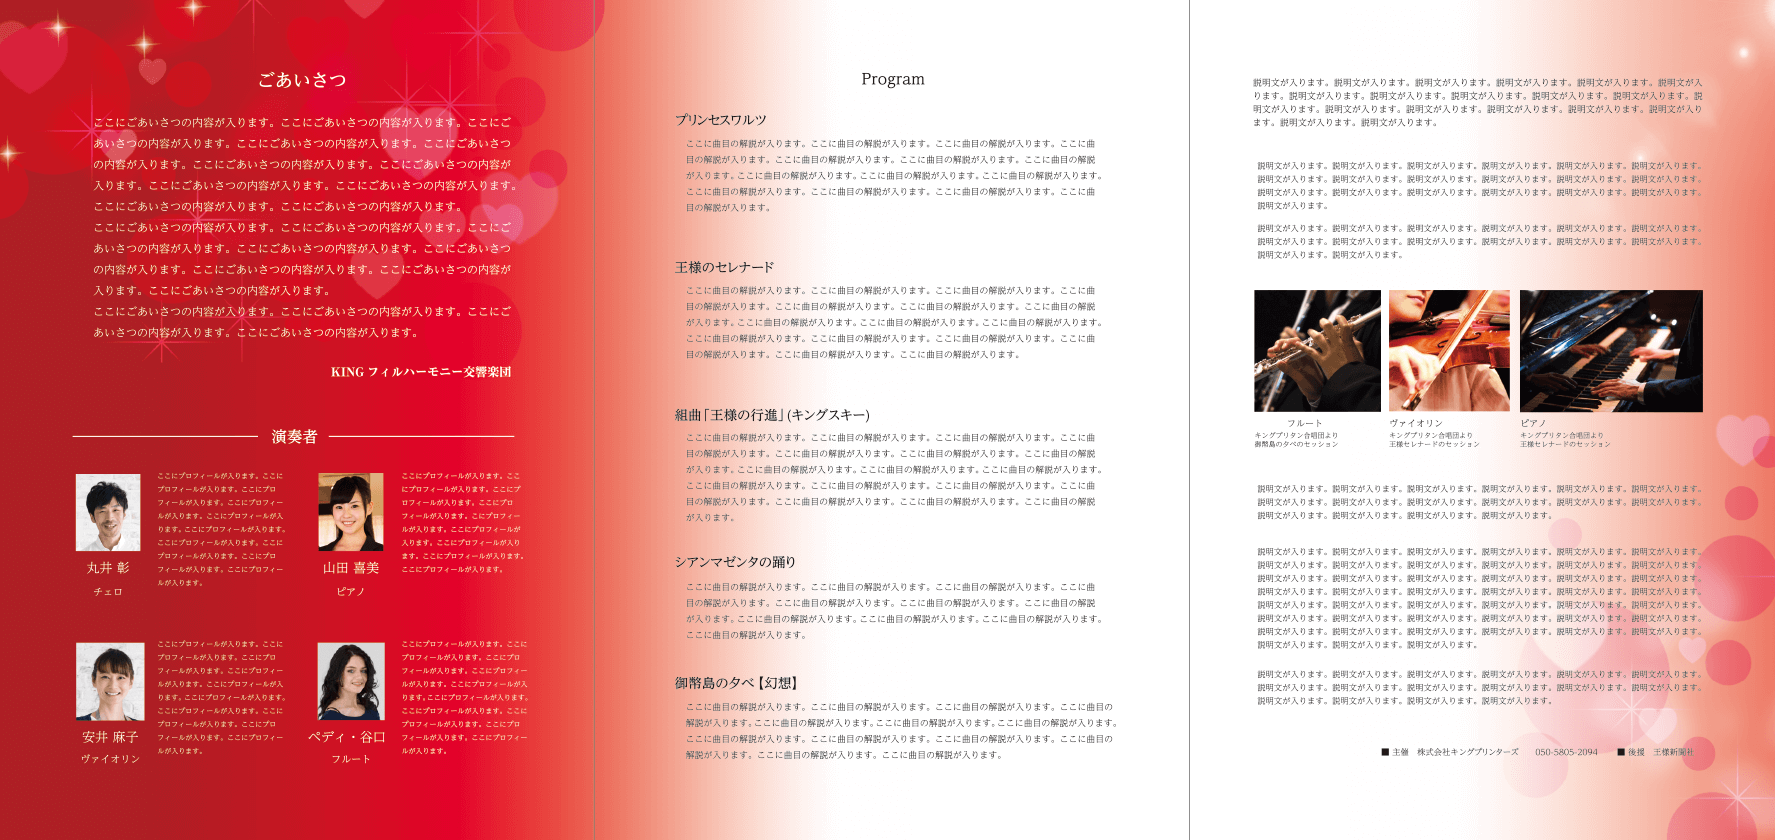 交響楽団コンサート三つ折りパンフレット大のウラ面のデザイン例